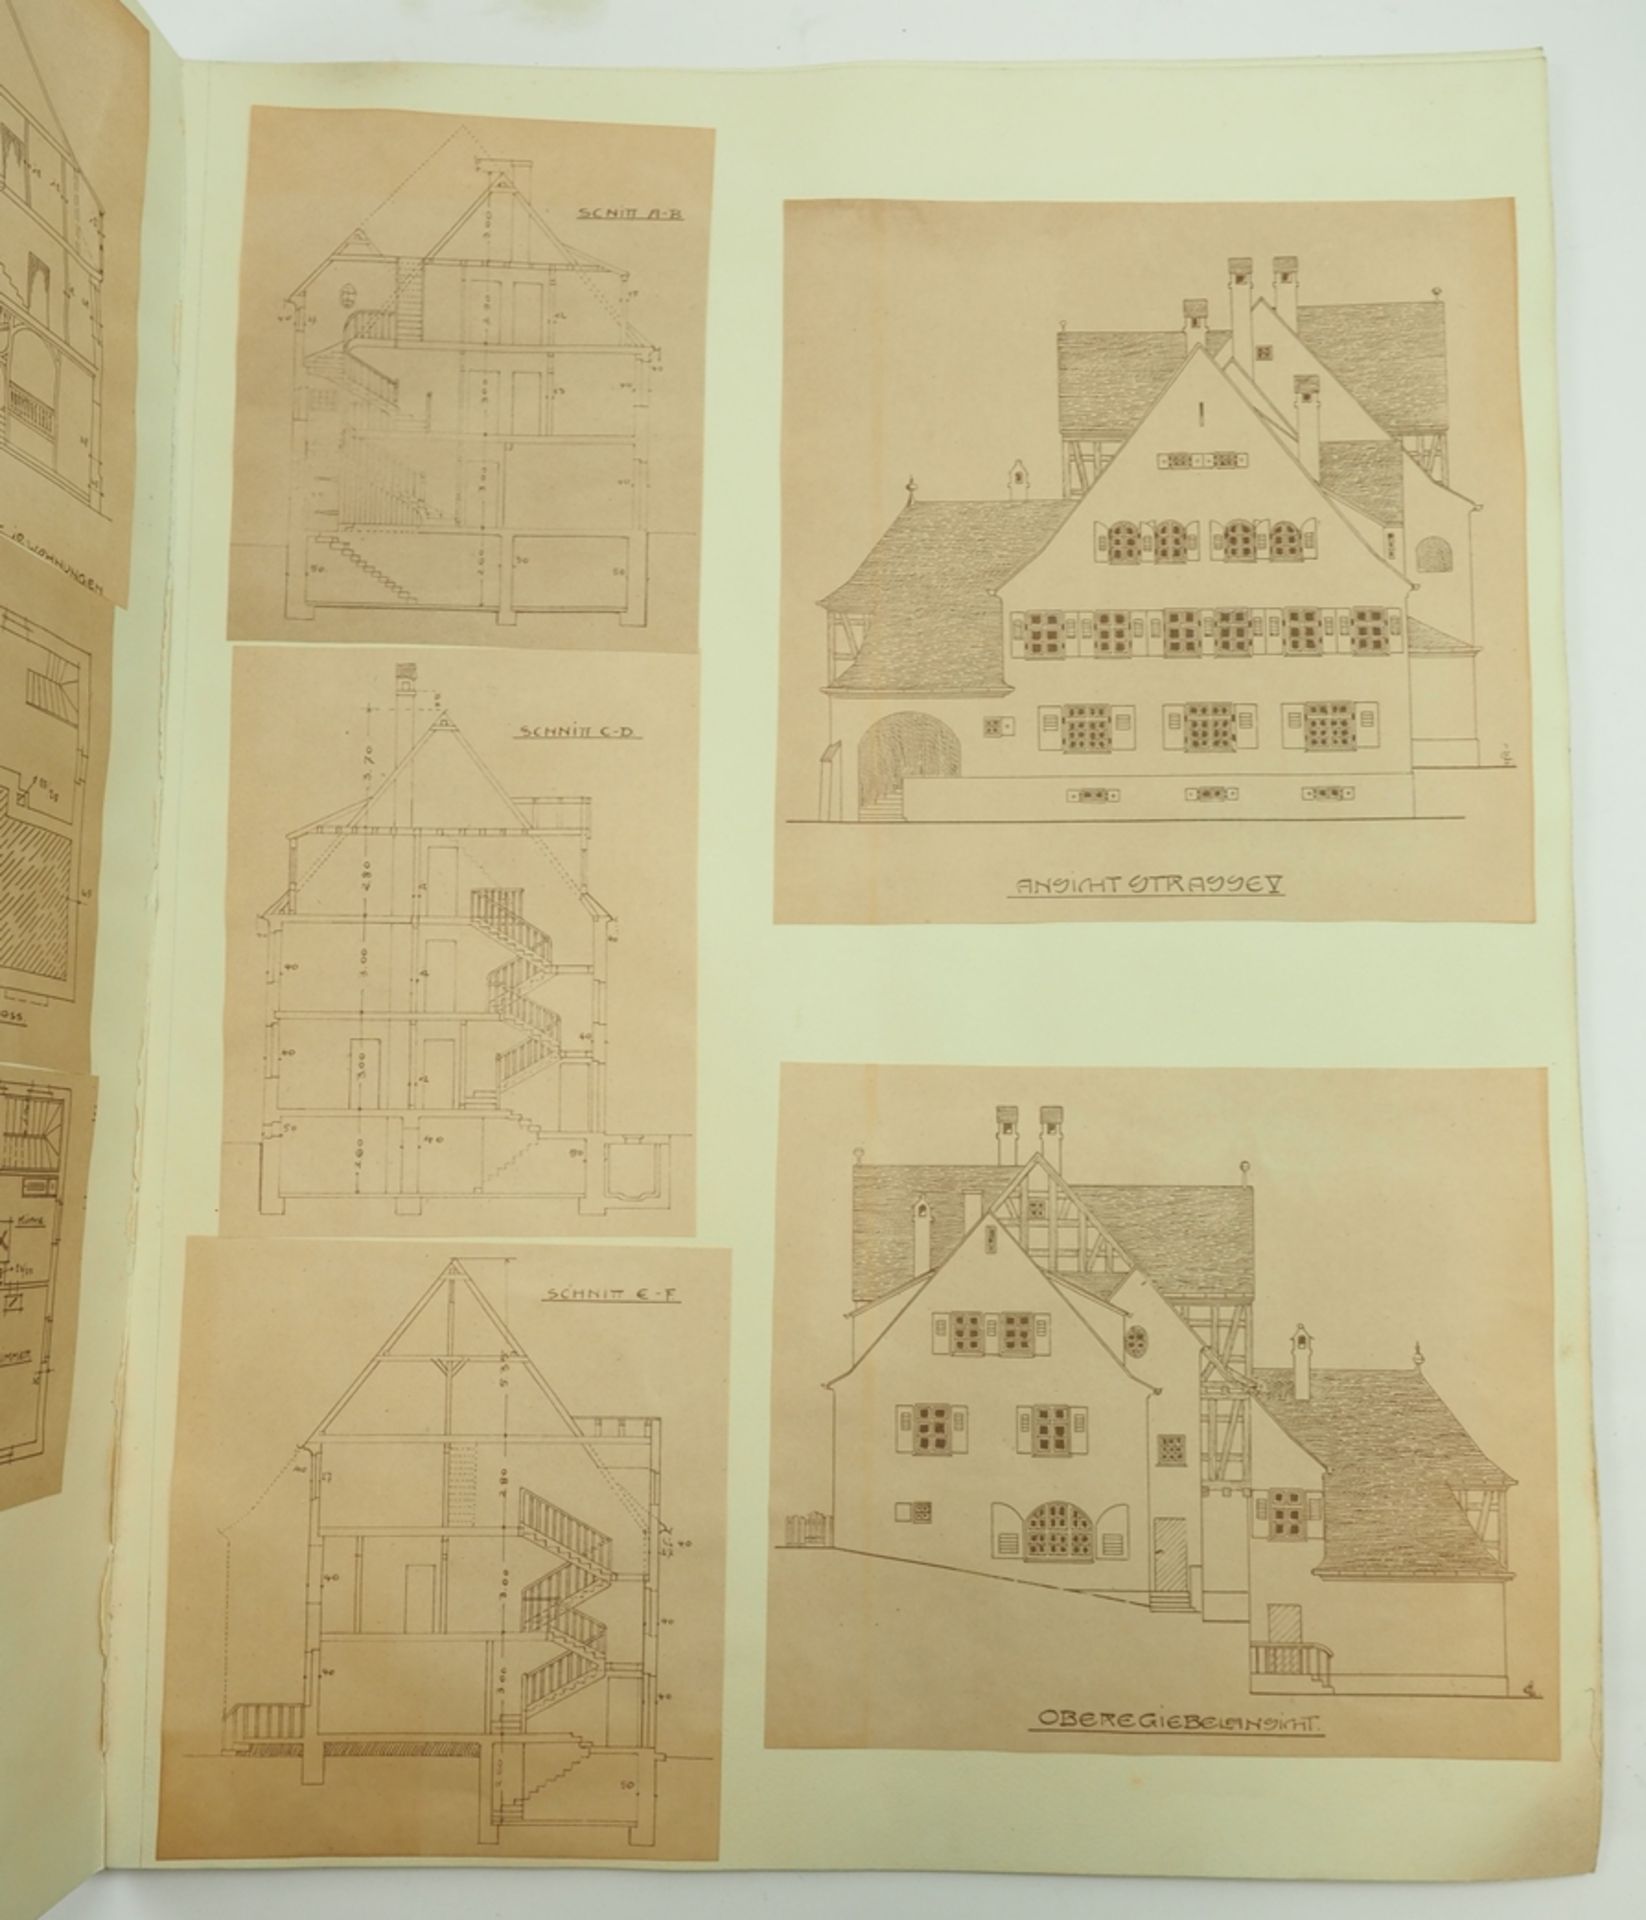 Arbeiterkolonie Gmindersdorf - Reutlingen, Architektur Mappe. - Image 9 of 10